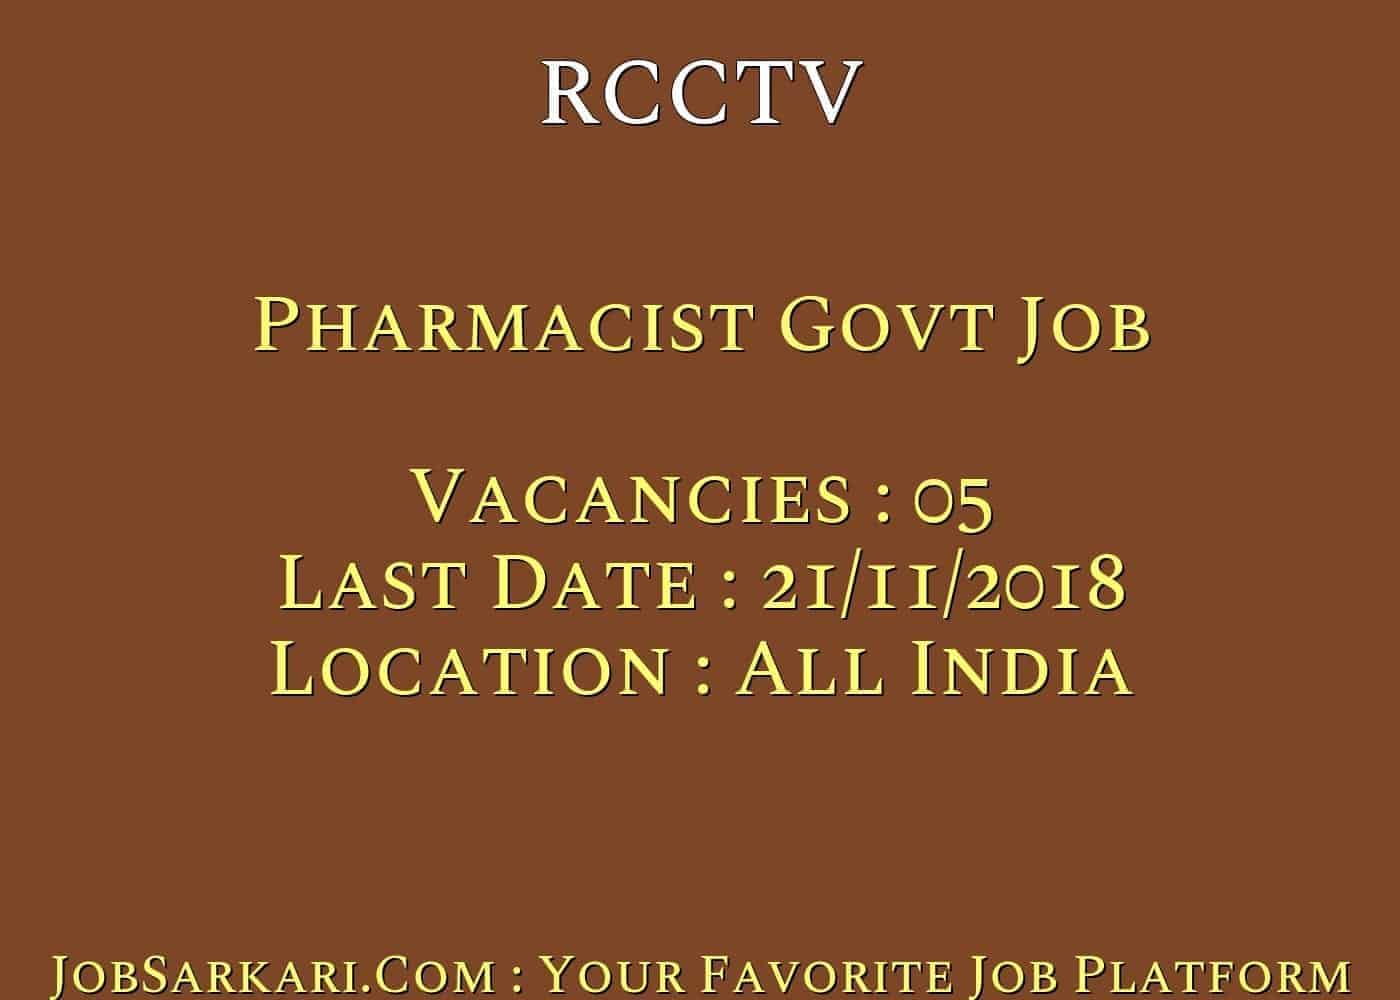 RCCTV Recruitment 2018 for Pharmacist Govt Job